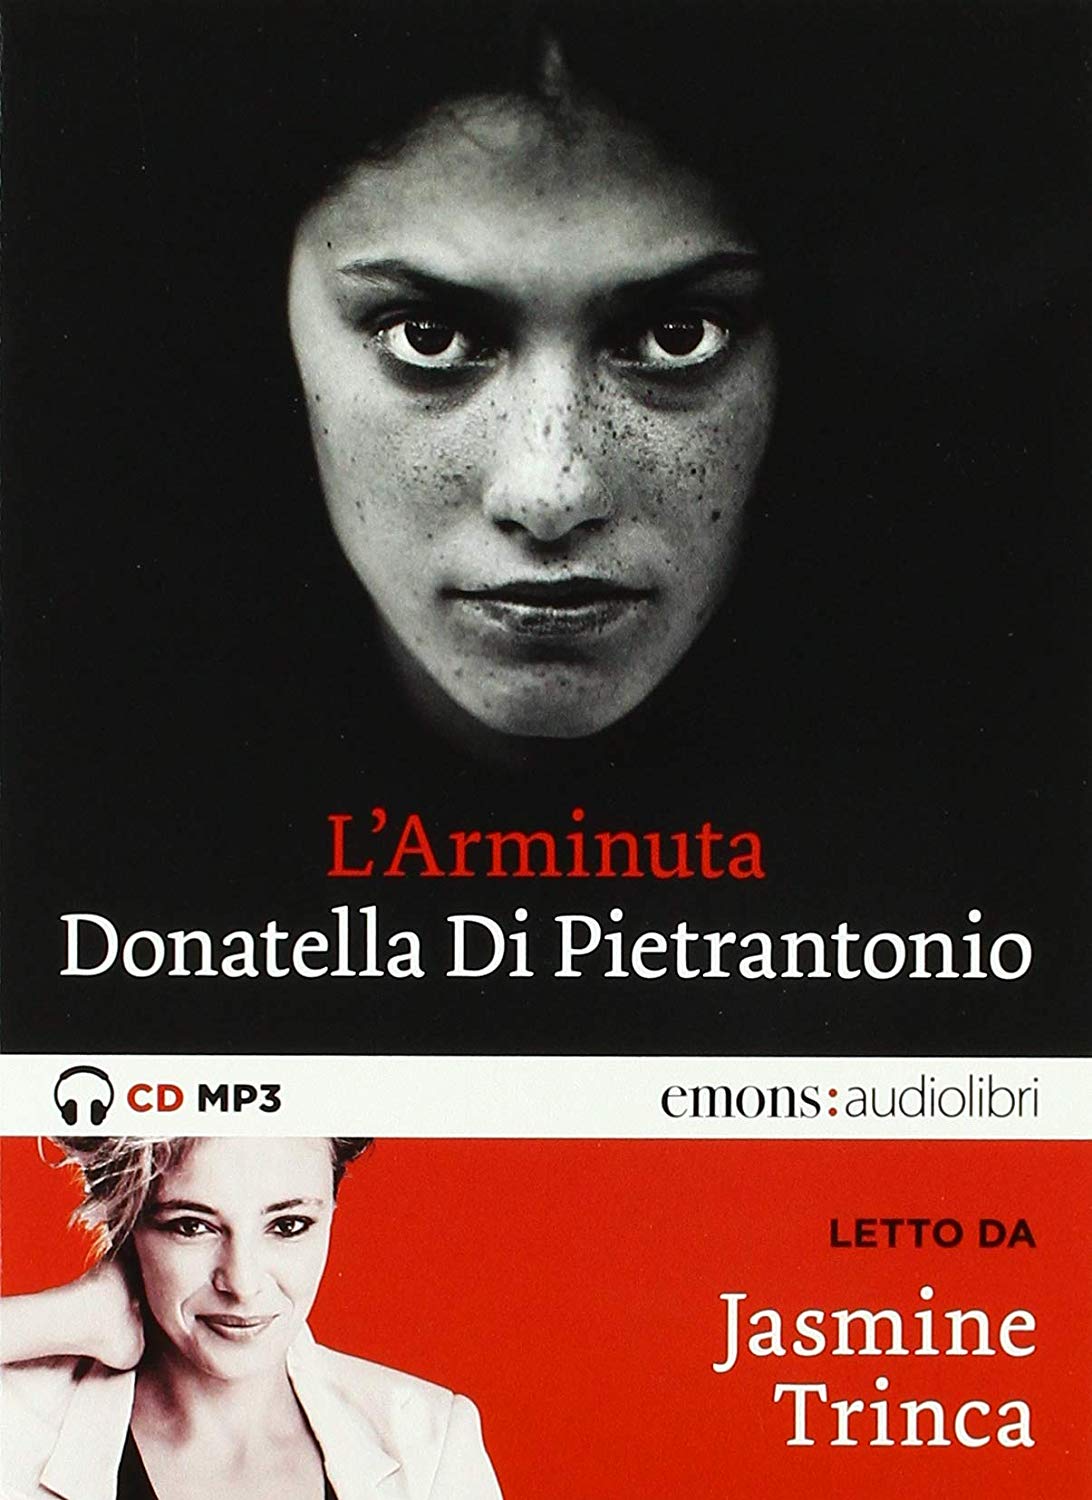 Audiolibro Di Pietrantonio Donatella - Di Pietrantonio, Donatella (Audiolibro) NUOVO SIGILLATO, EDIZIONE DEL 04/10/2018 SUBITO DISPONIBILE